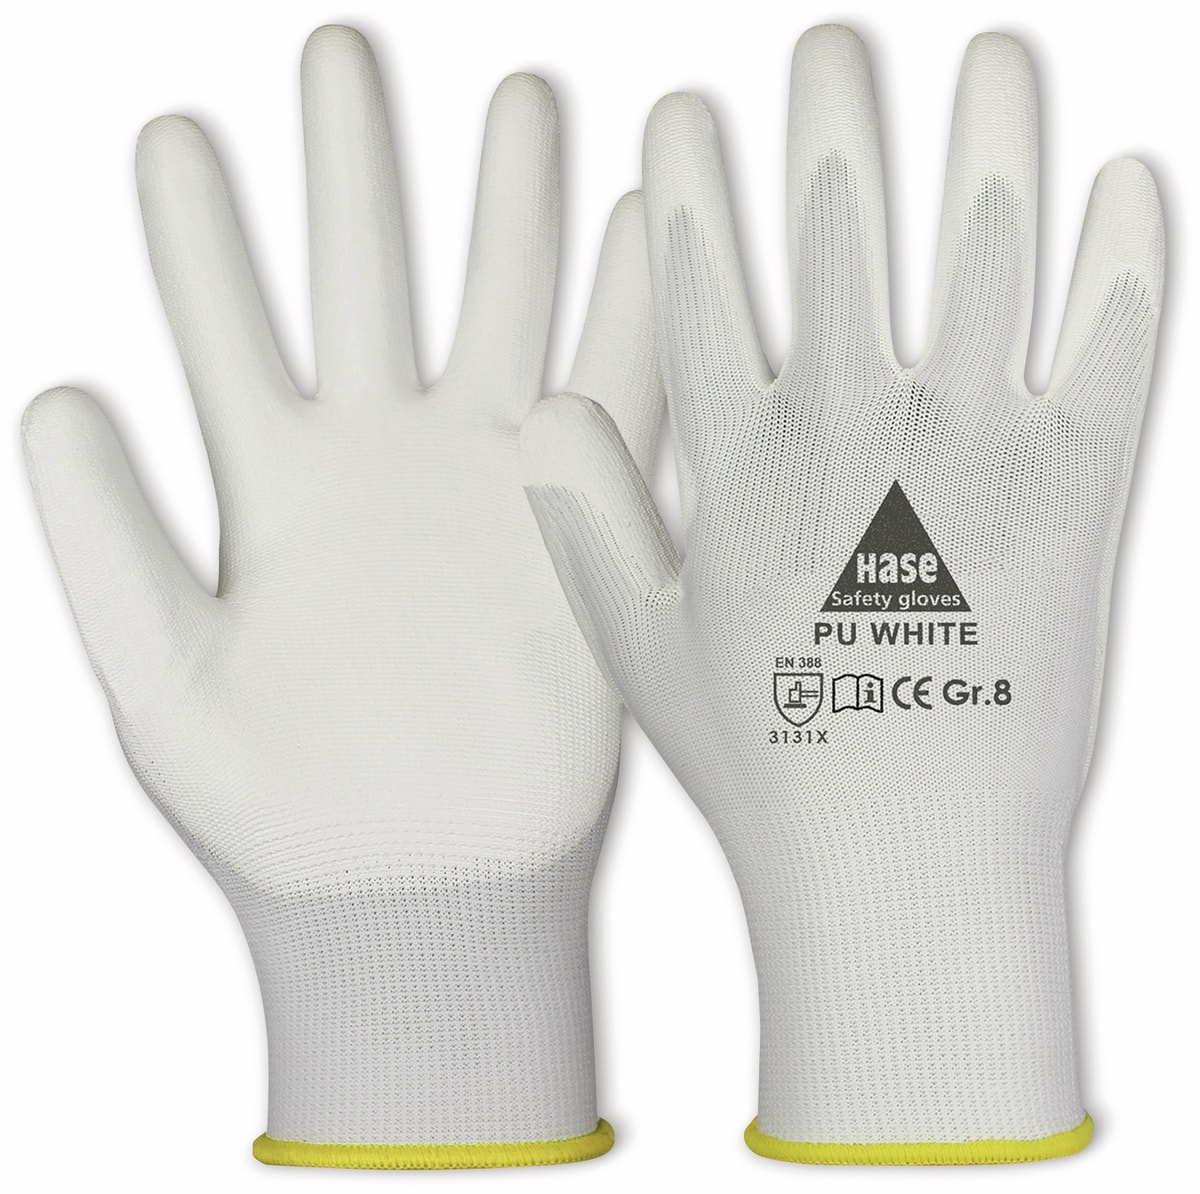 HASE SAFETY GLOVES Arbeitshandschuhe PU, PU white, EN 388, EN 420, weiß, Größe 7 von Hase Safety gloves